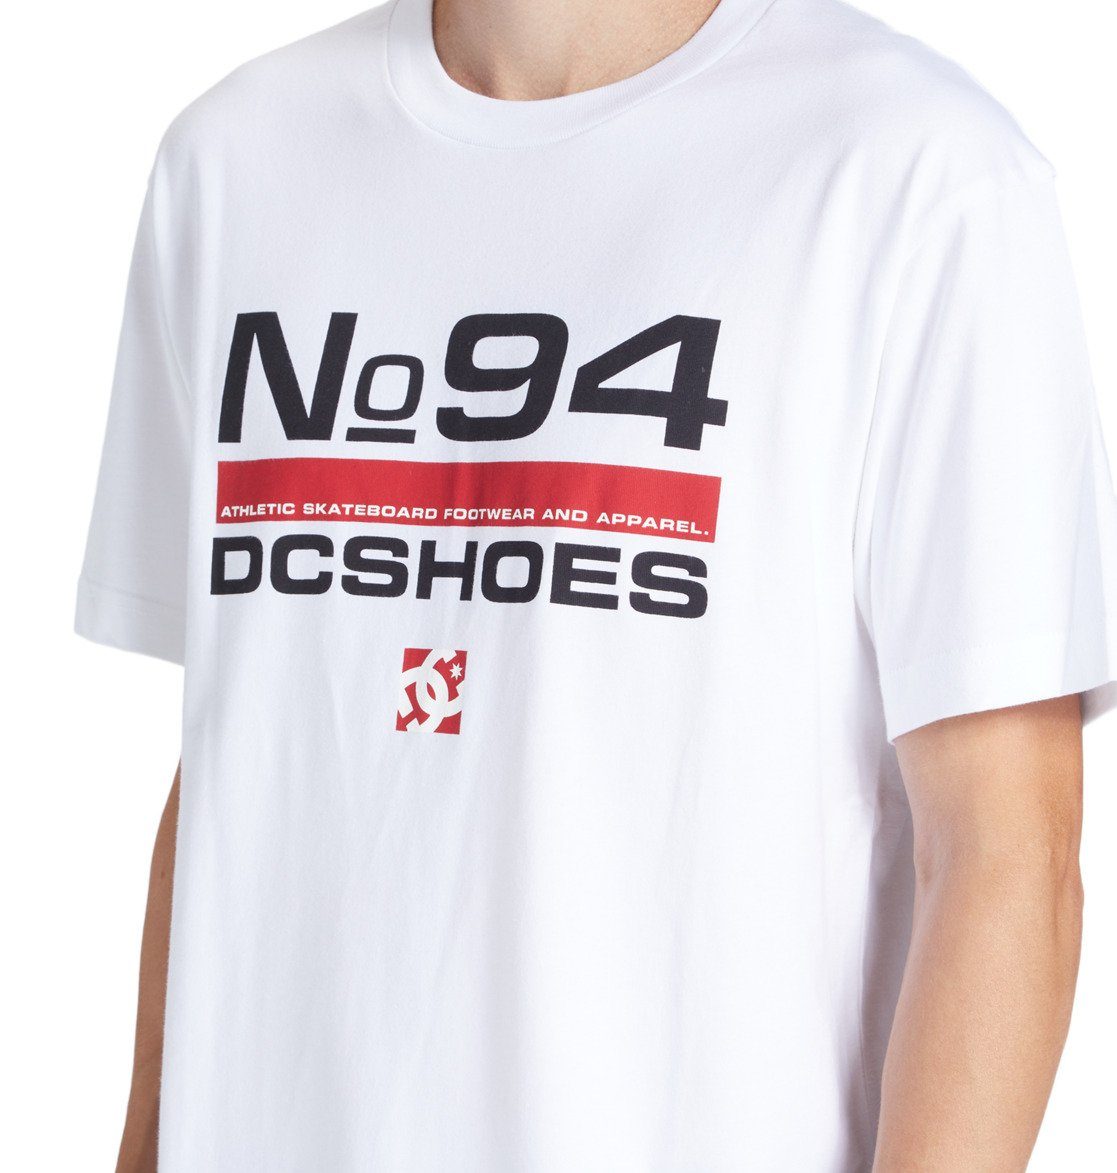 DC Shoes T-shirt Nine Four